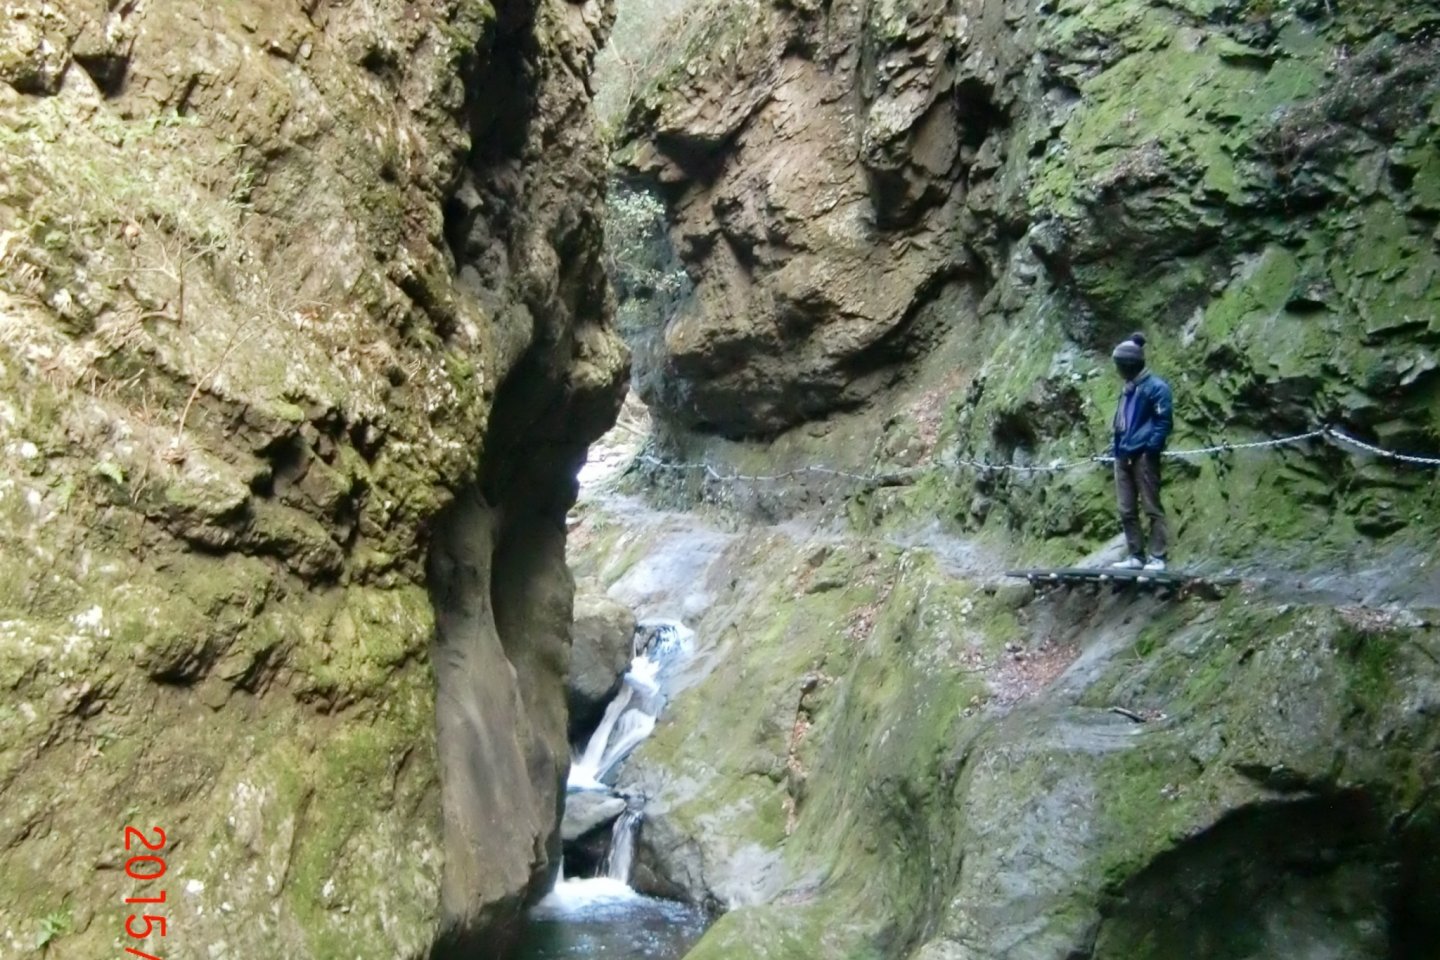 神戸岩渓谷内。岩壁に備え付けられているてチェーンをつたっての渓谷散策は秘境探検気分が楽しめます